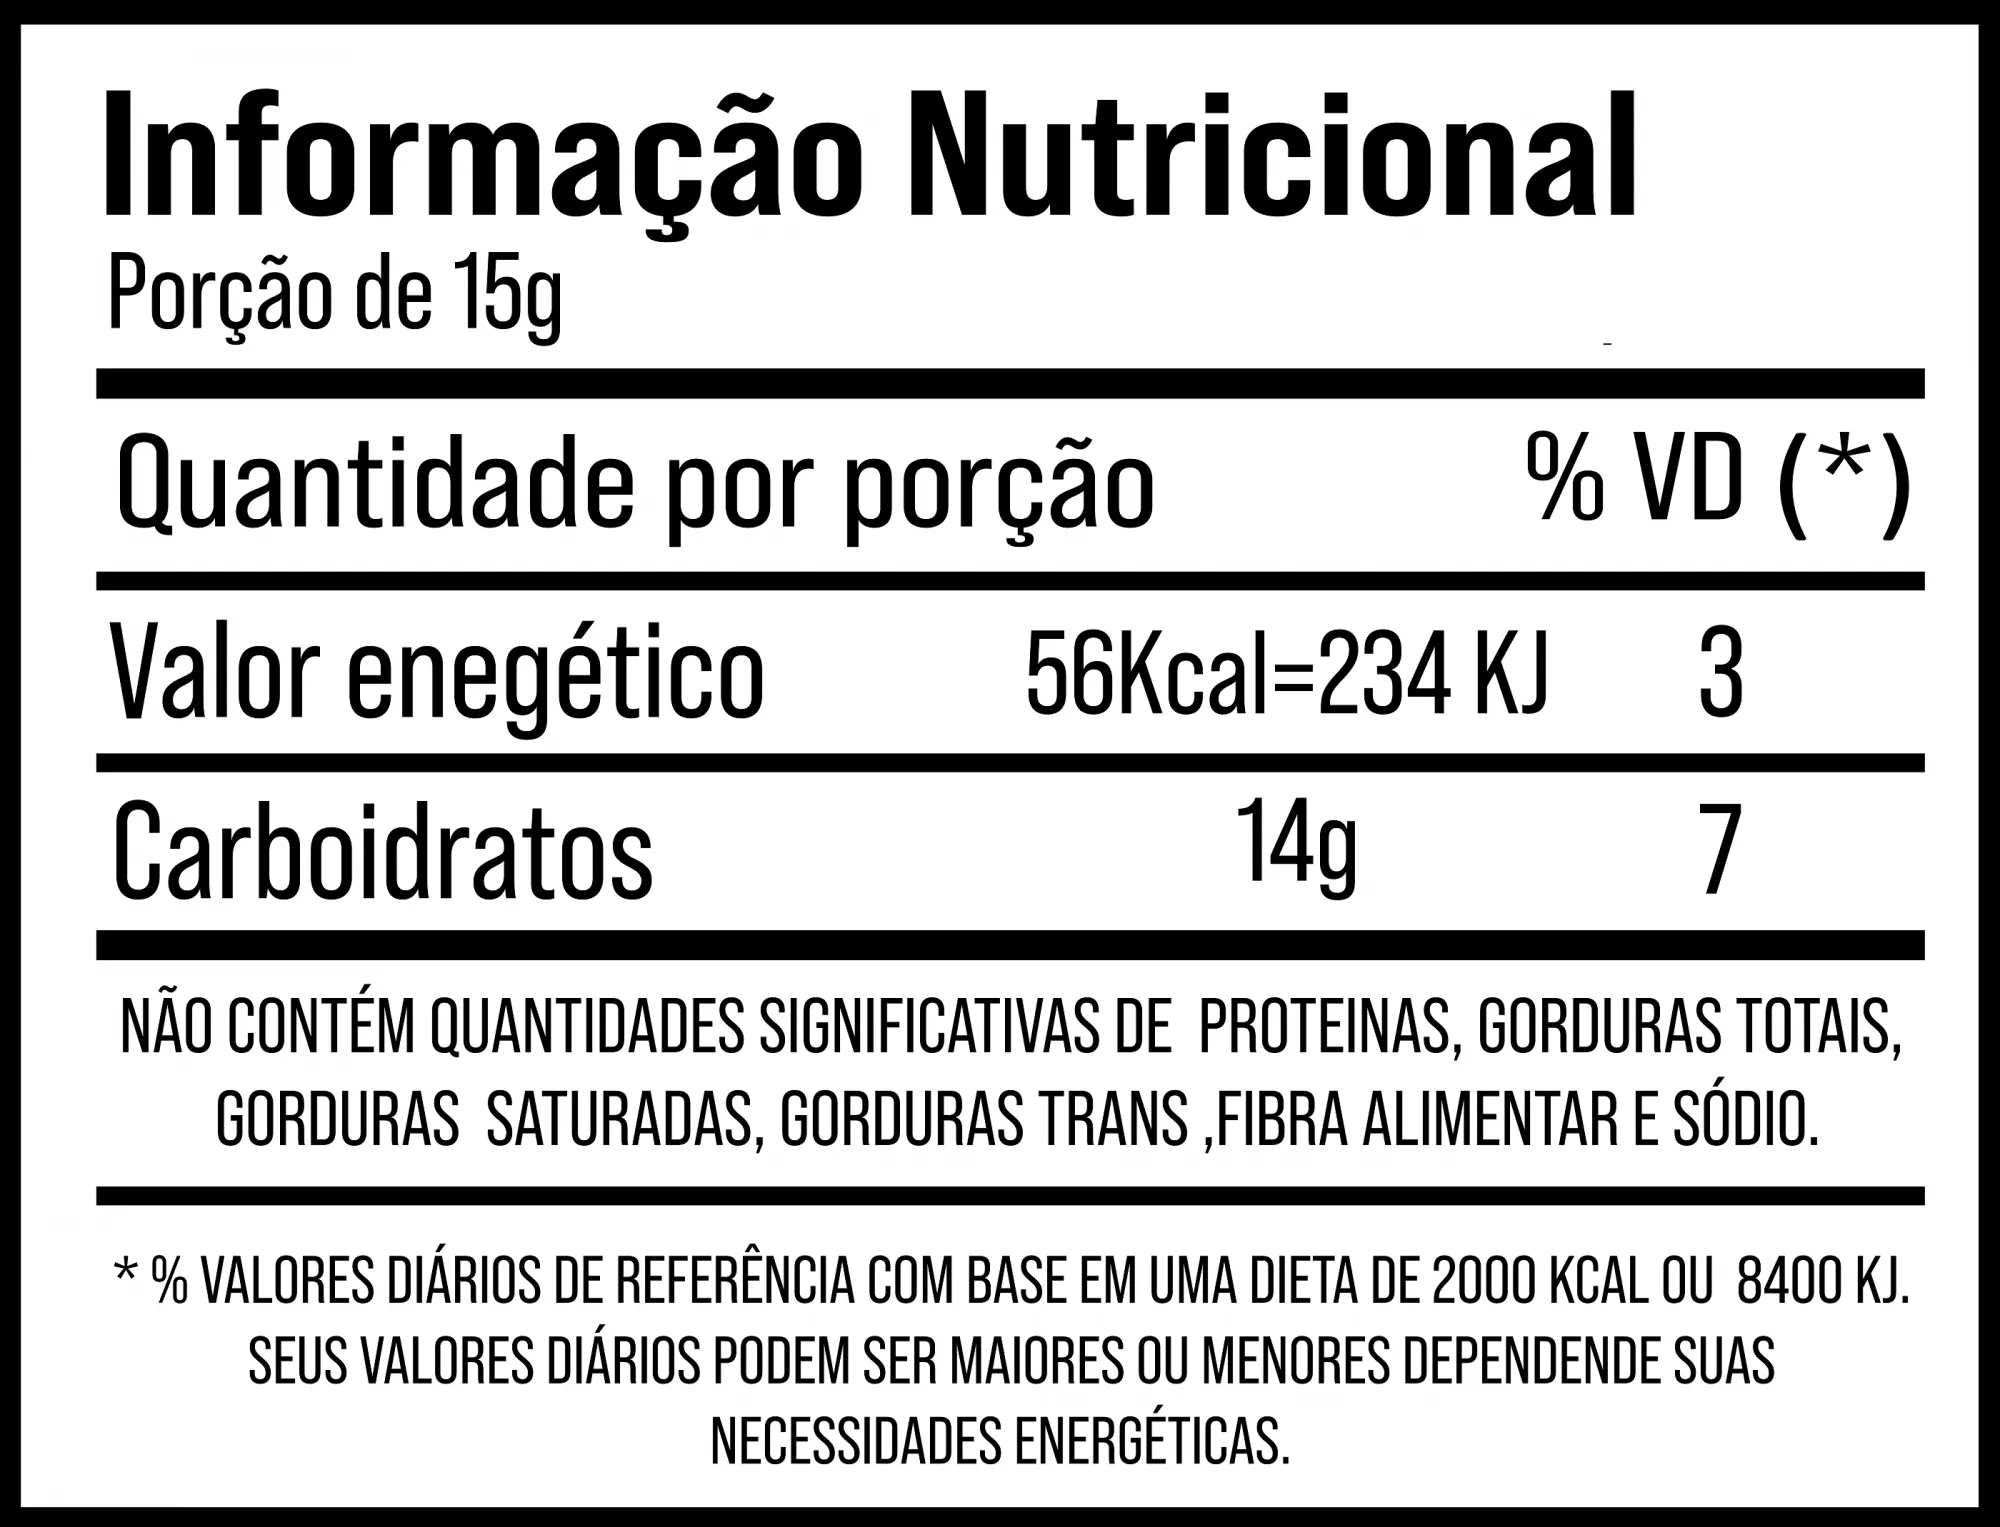 PALATINOSE SACHÊ DE 15G - SUDRACT NUTRITION